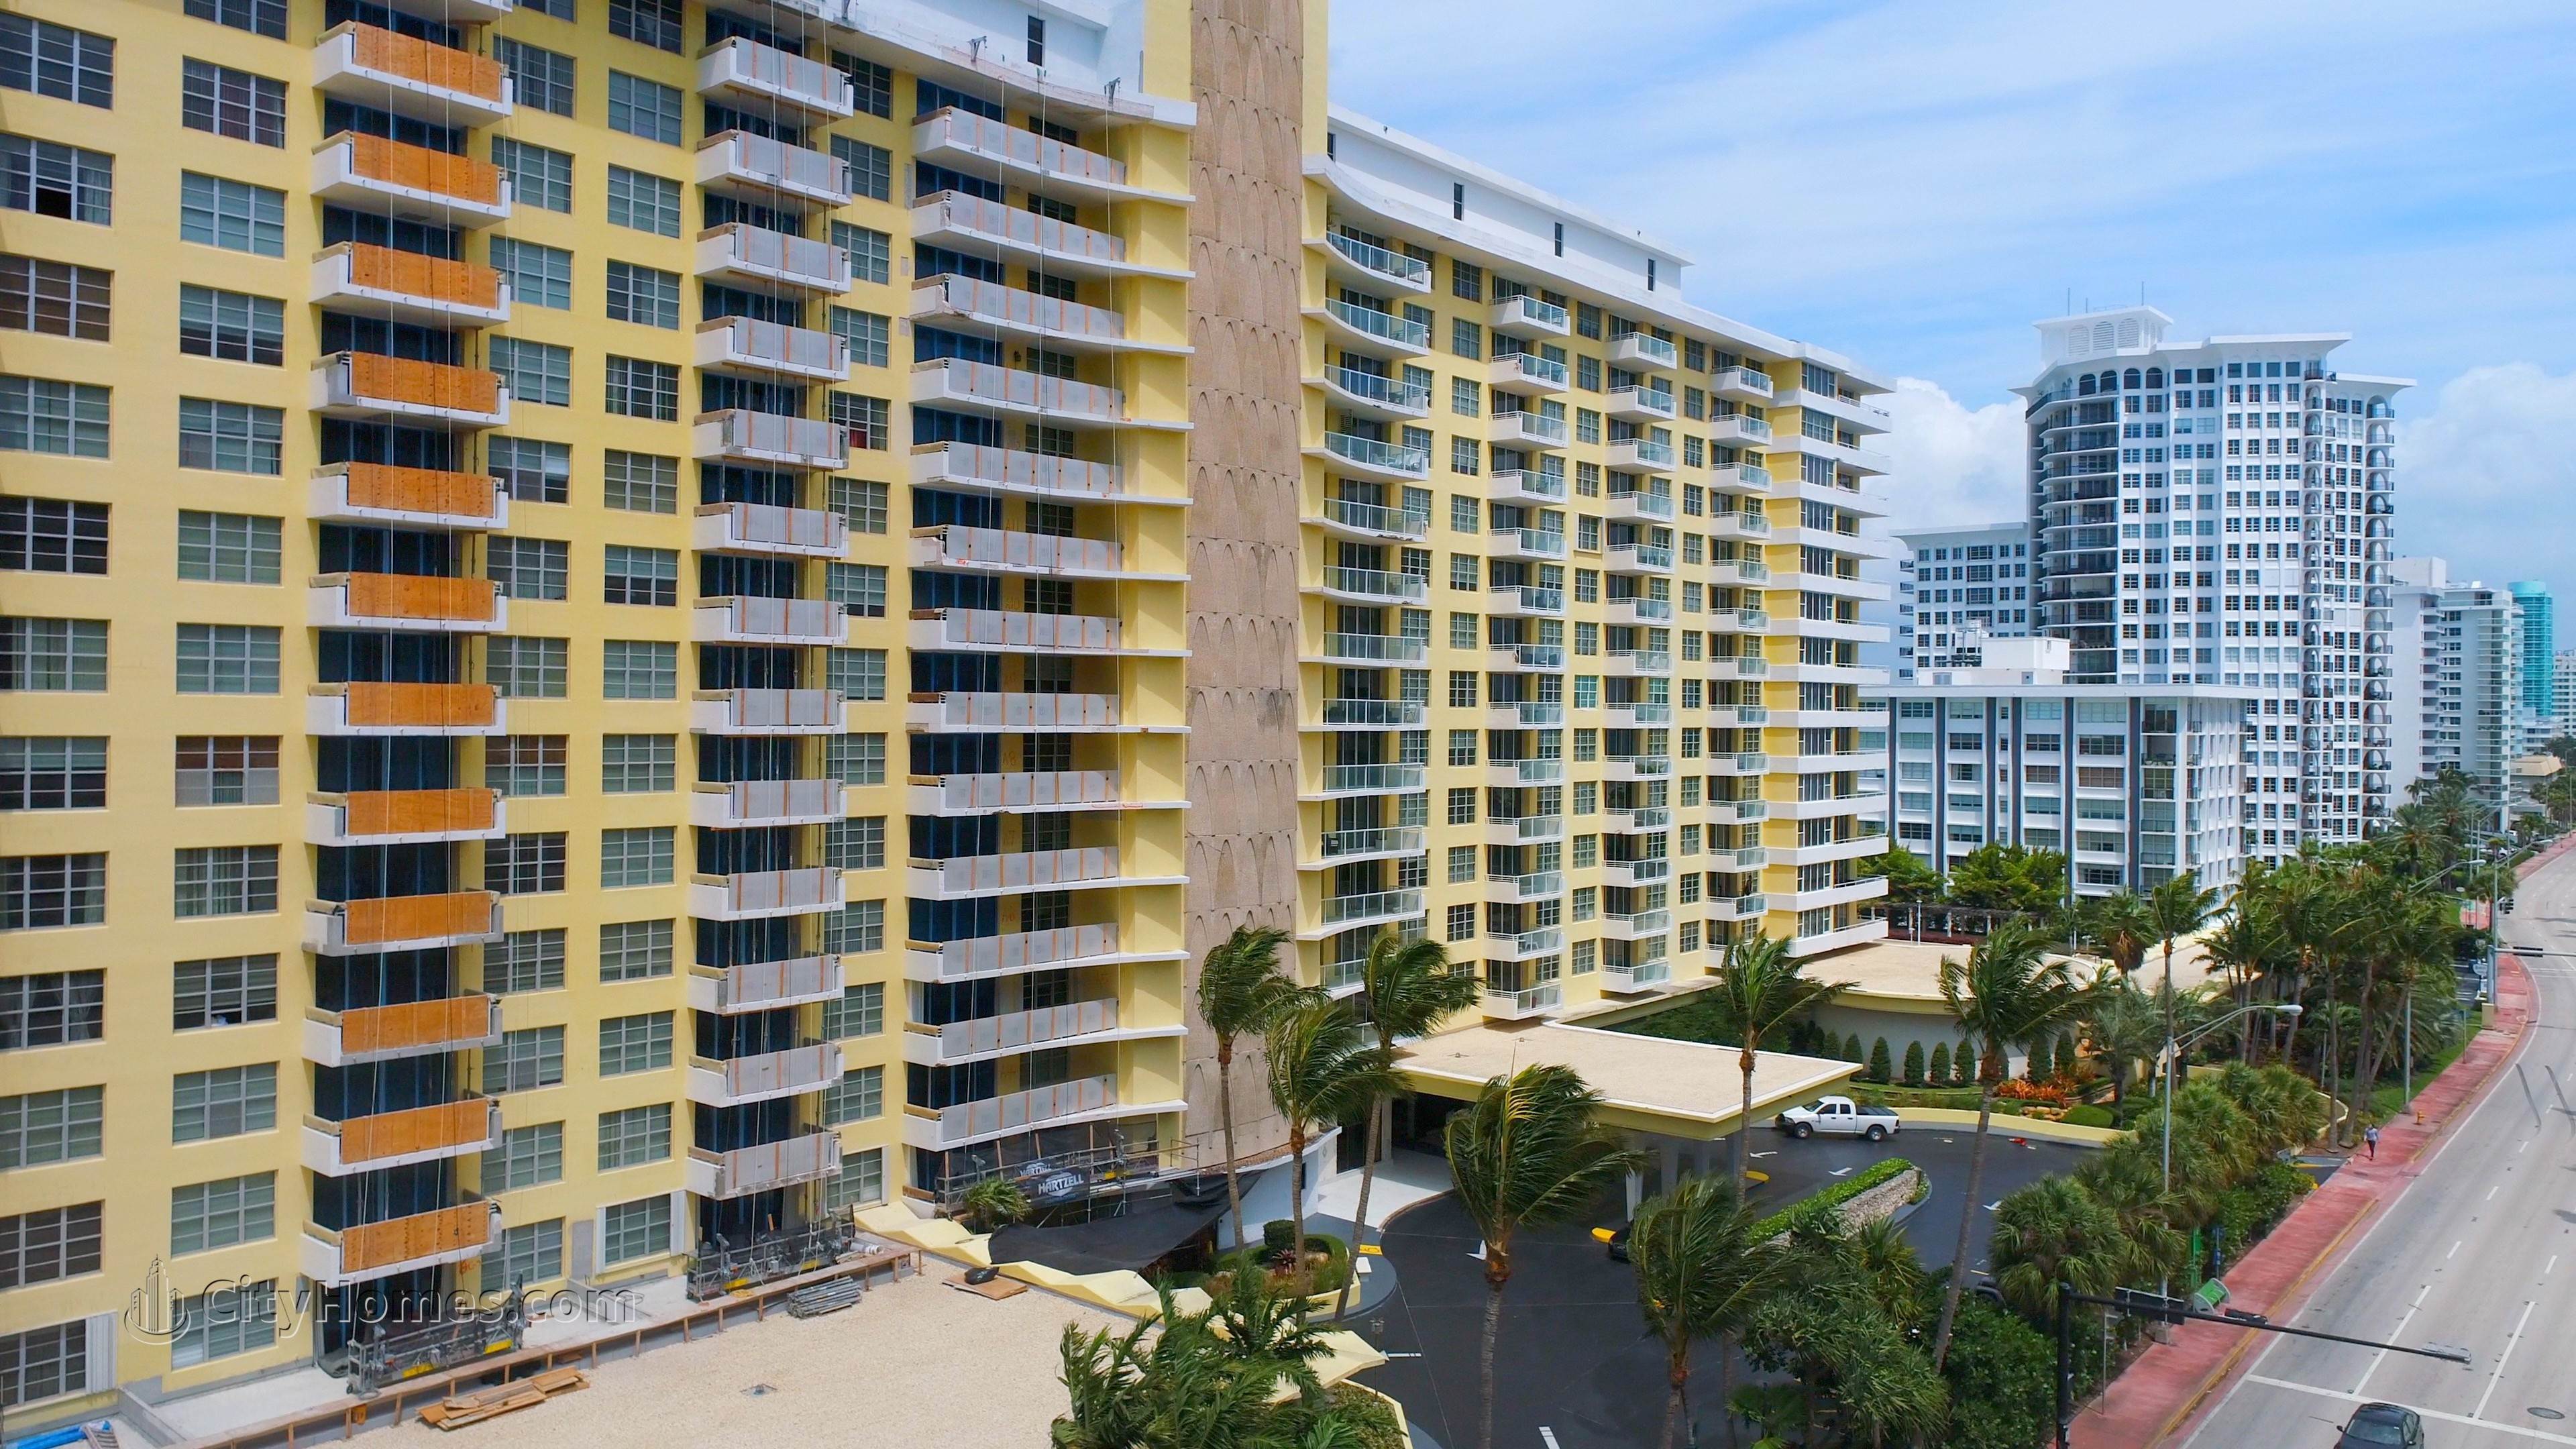 4. 5600 COLLINS  building at 5600 Collins Avenue, Miami Beach, FL 33140